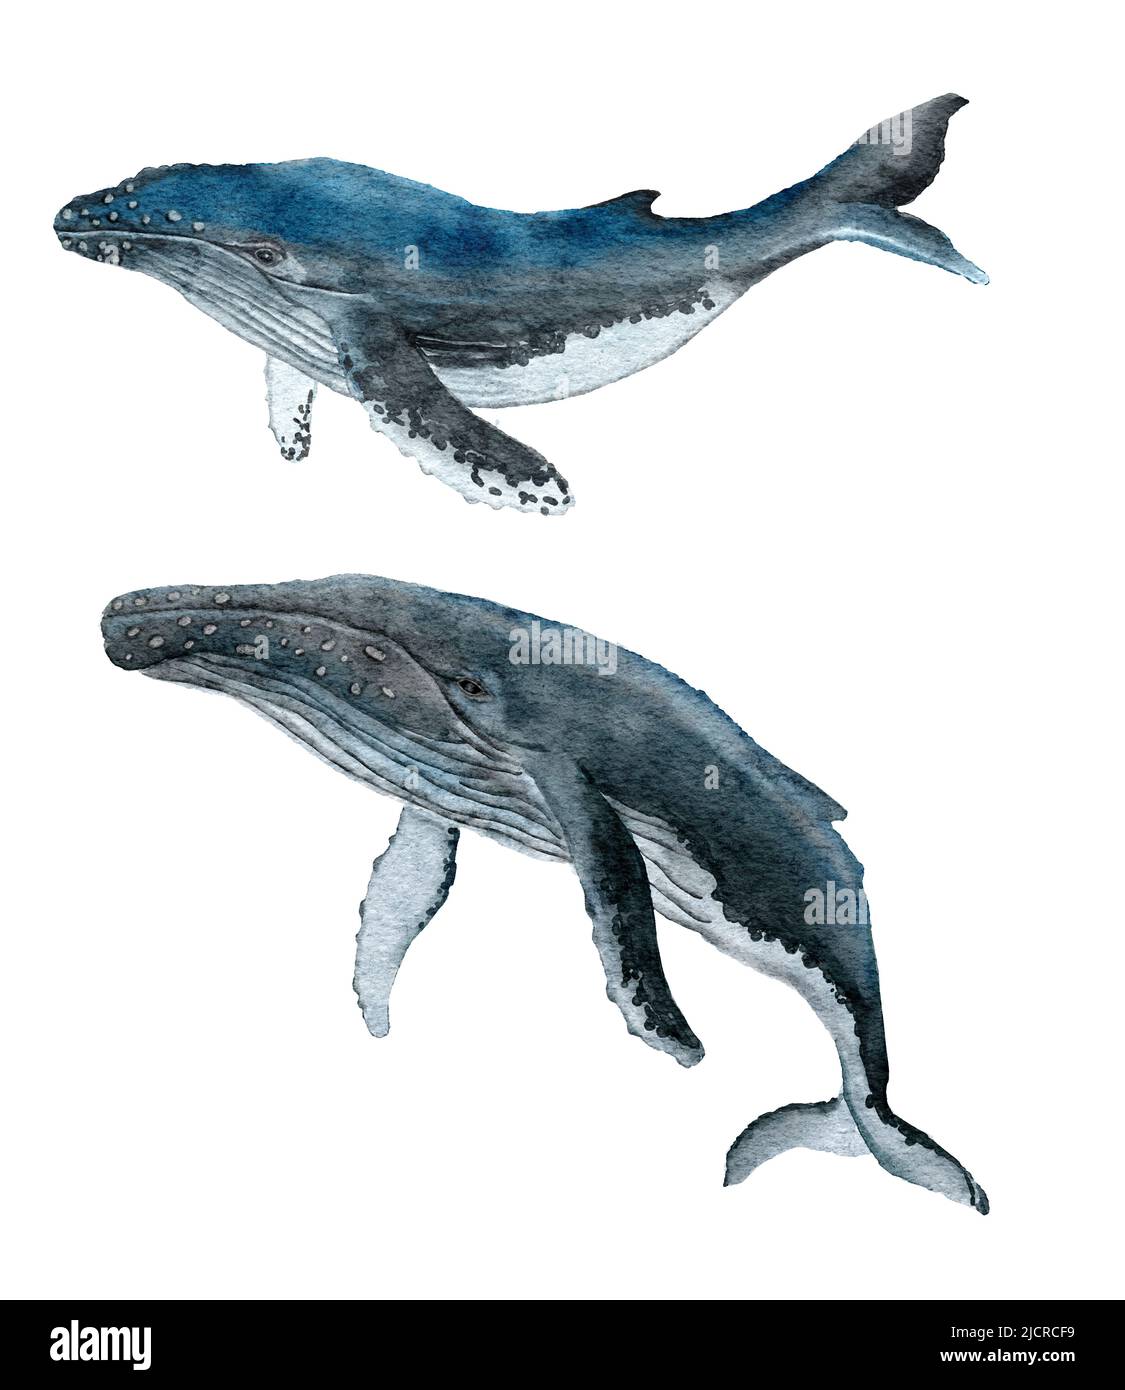 Illustration aquarelle de la baleine à bosse, grand animal mammifère marin. Océan marin faune marine sous-marine, nature sauvage, environnement écologique, espèces aquatiques menacées Banque D'Images